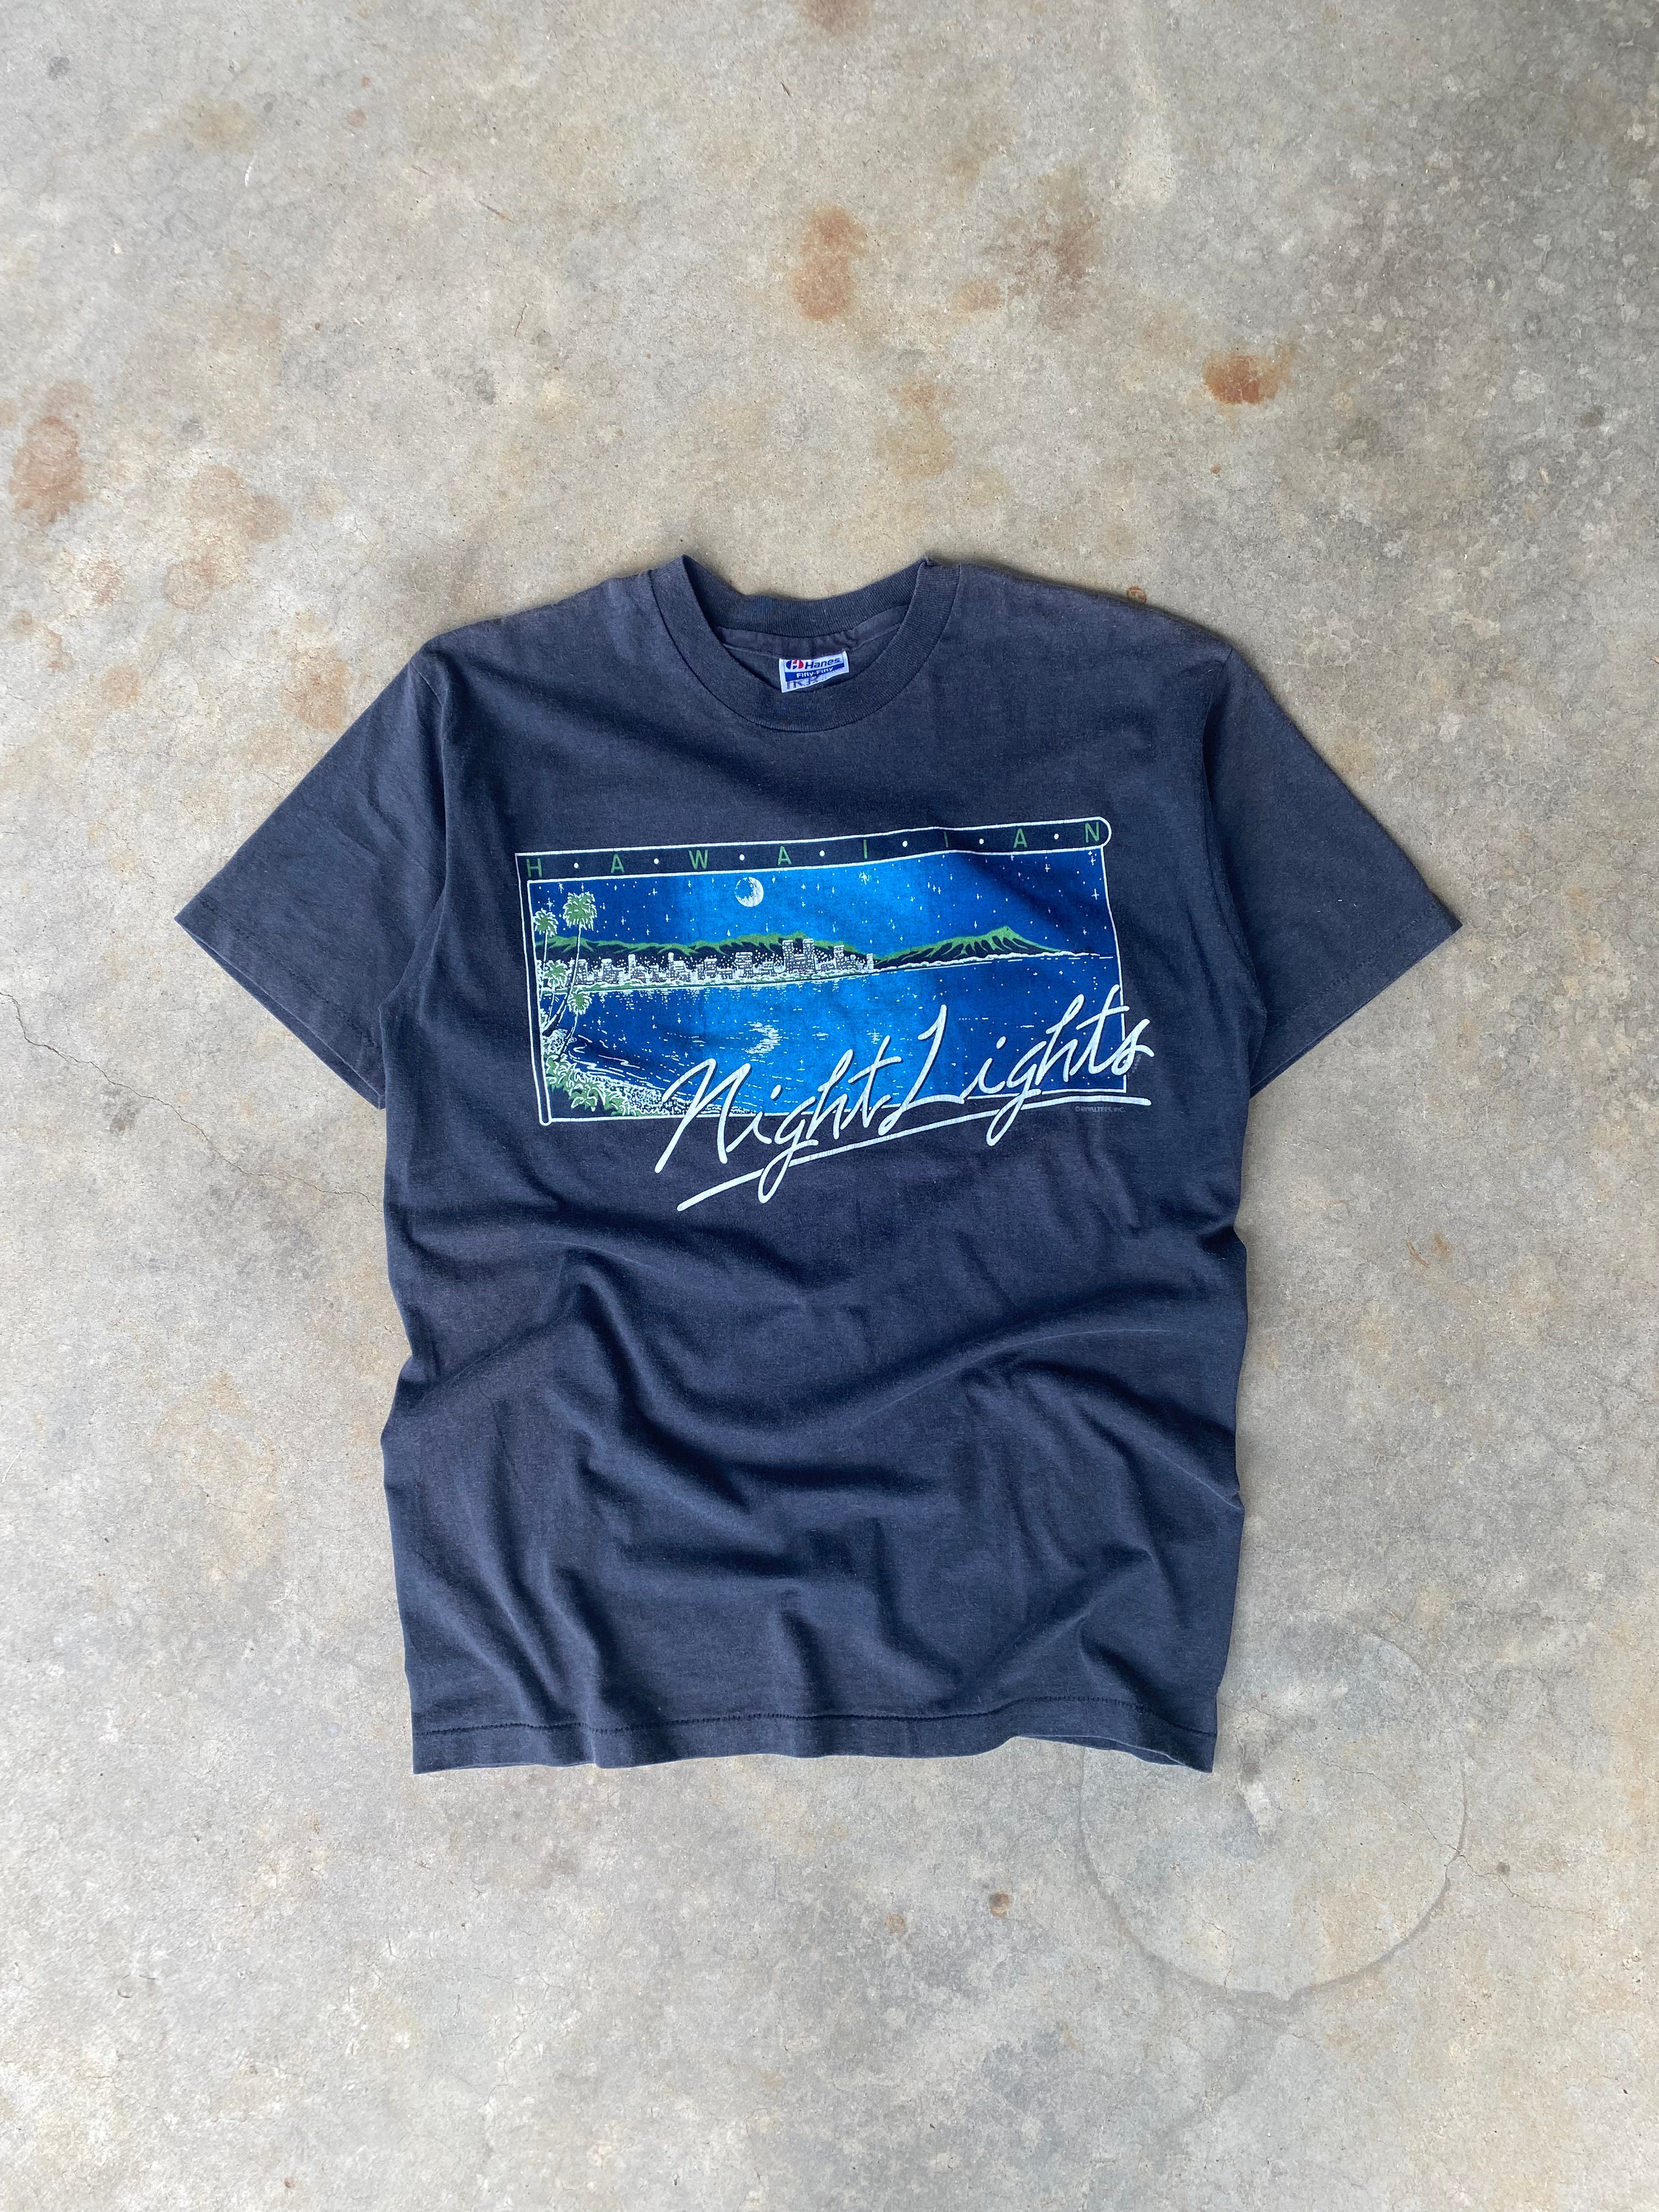 1980s Hawaiian Night Lights T-Shirt (M/L)